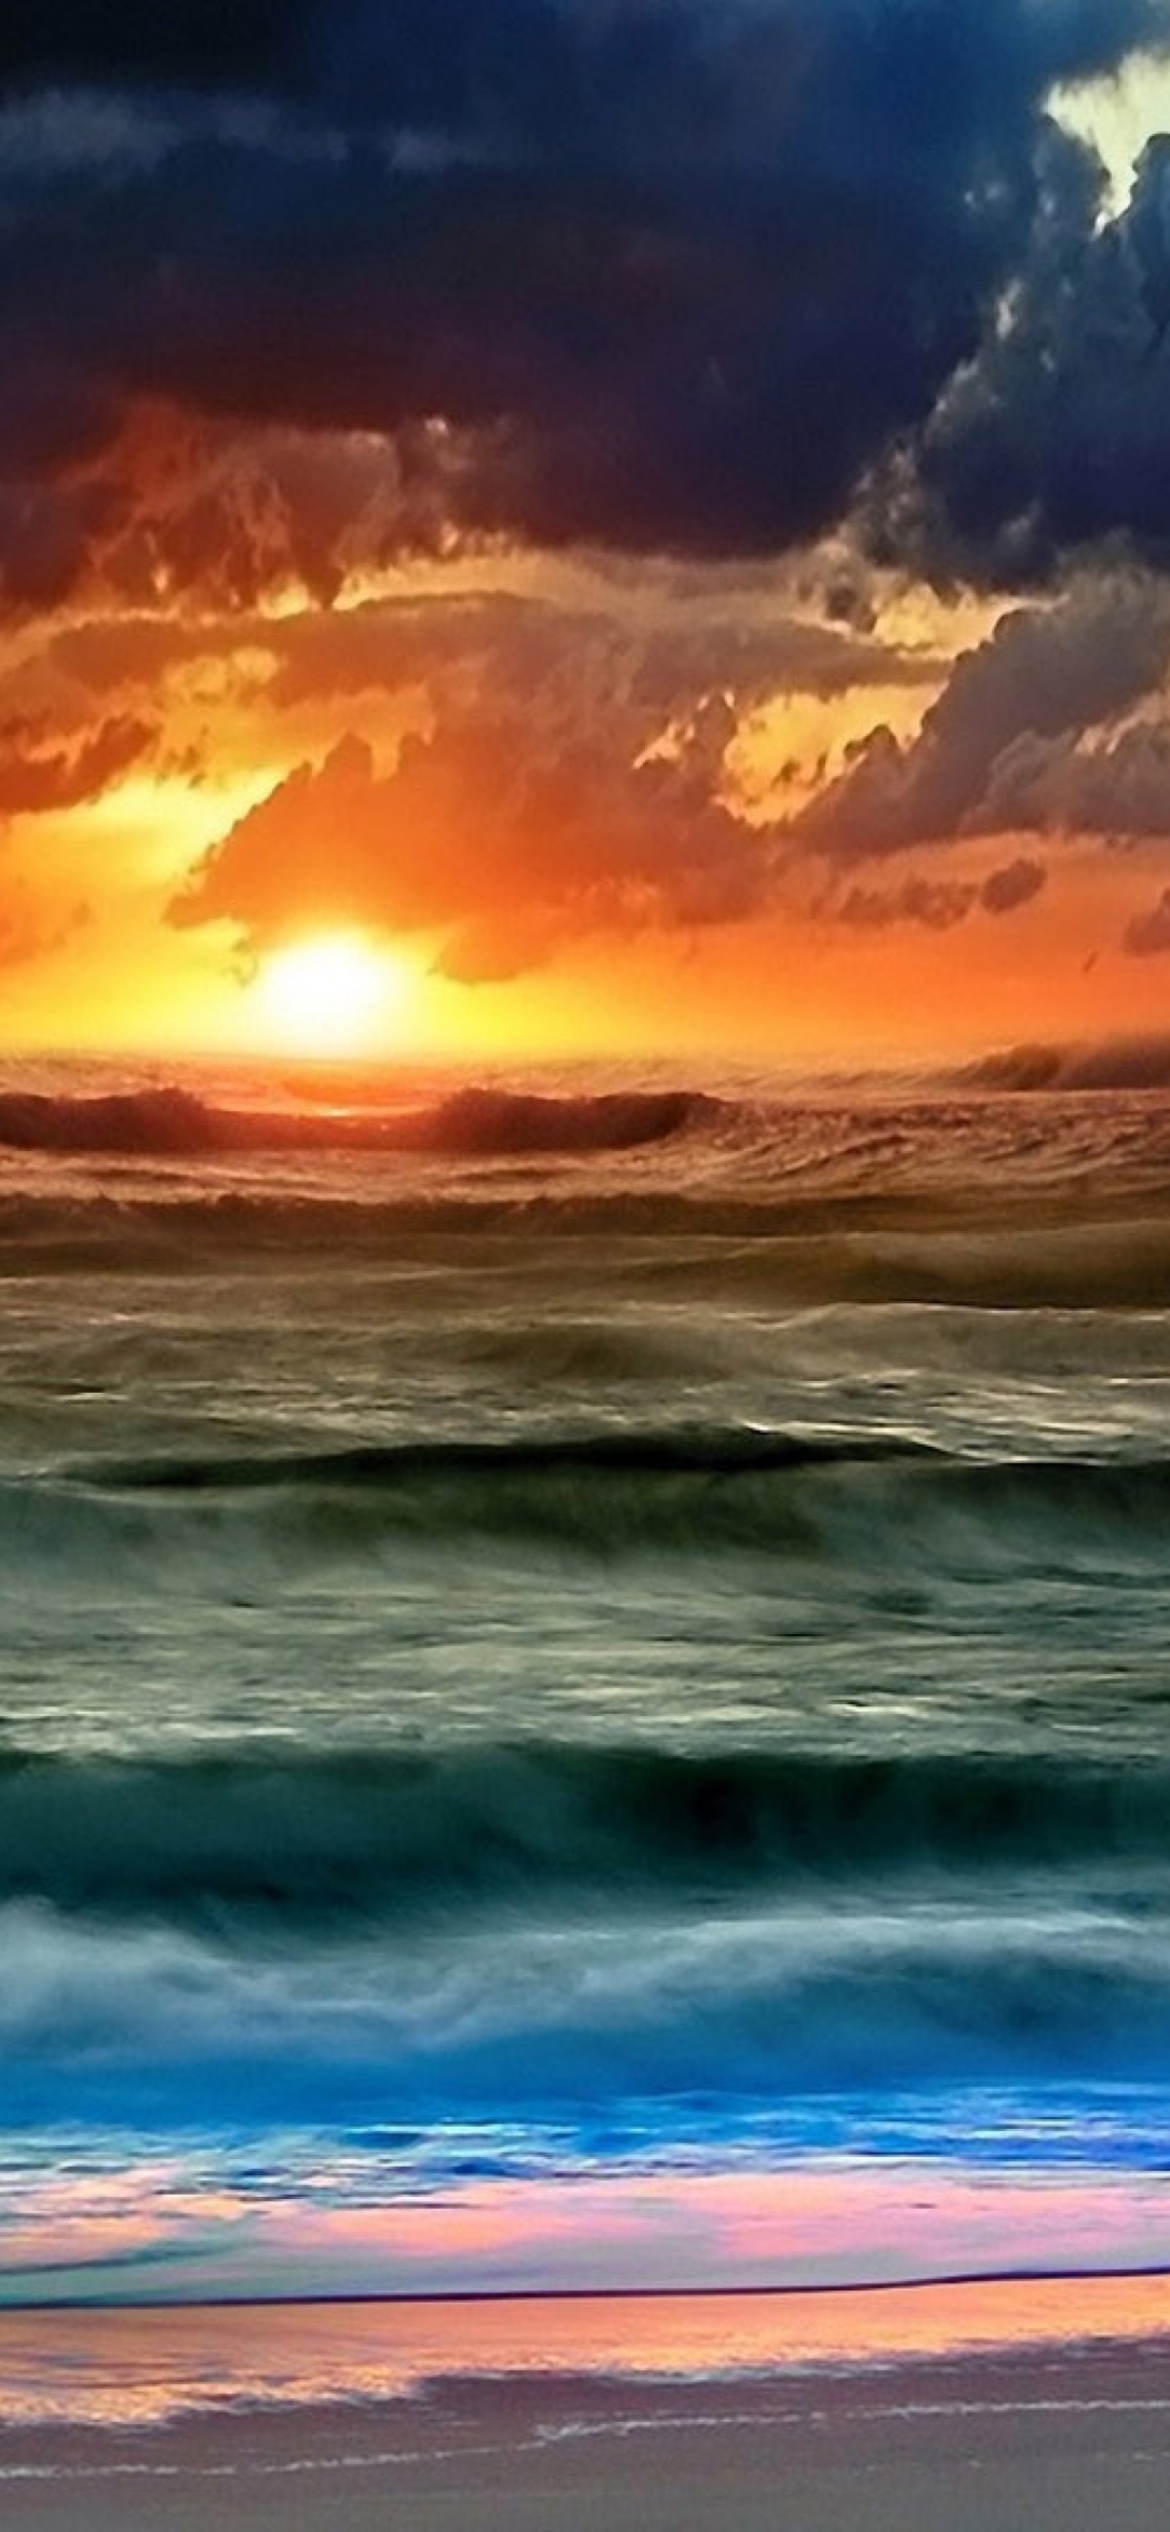 Sfondi Colorful Sunset And Waves 1170x2532